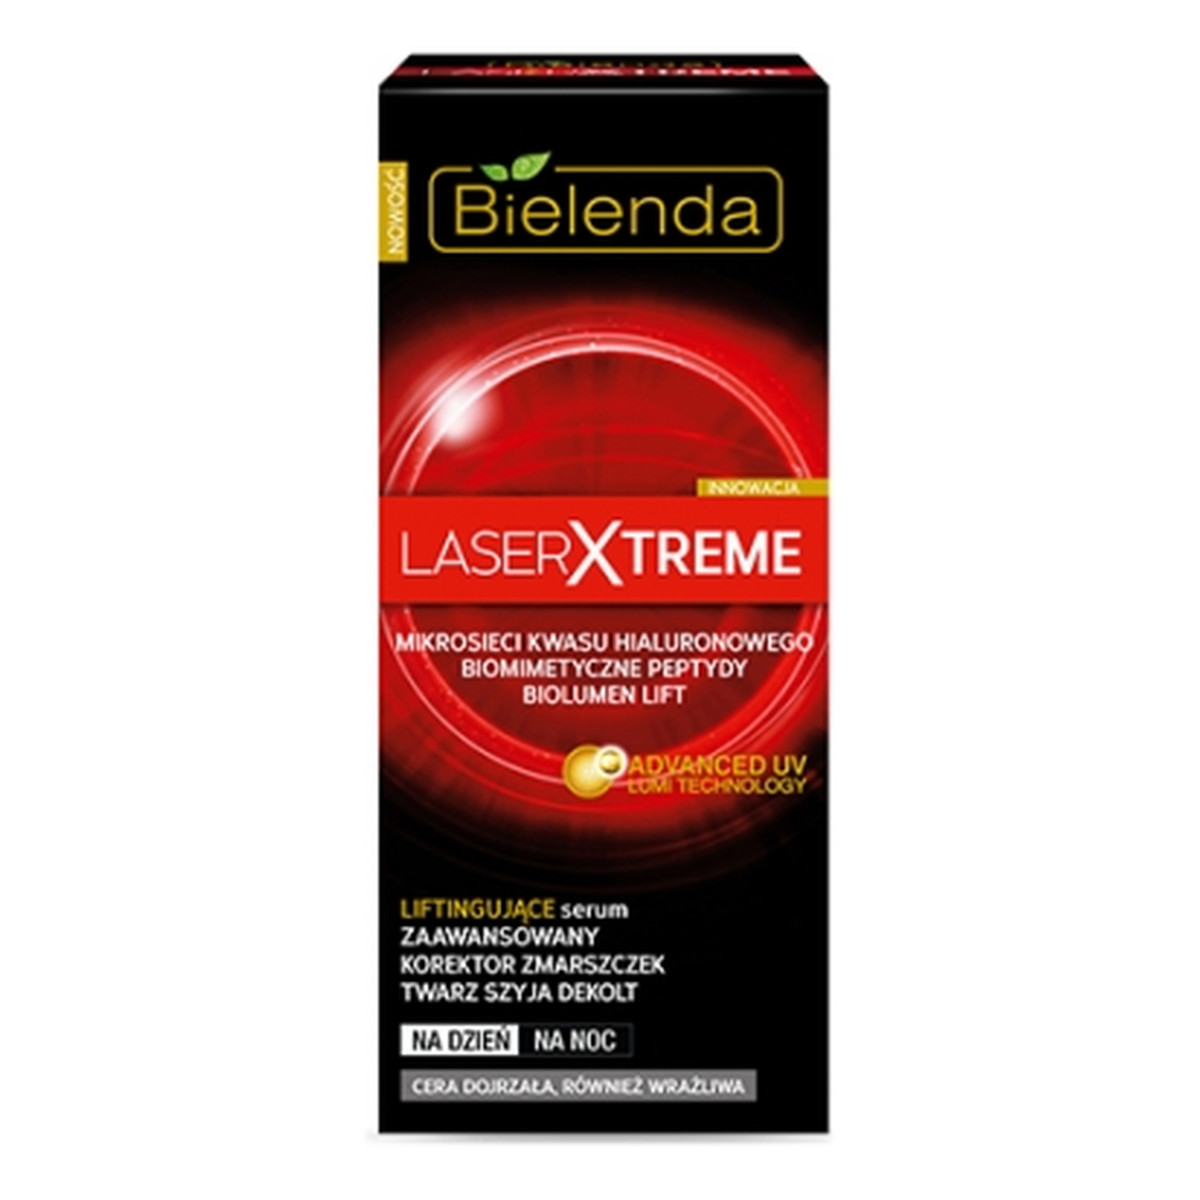 Bielenda Laser Xtreme Liftingujące Serum Twarz, Szyja, Dekolt 30ml